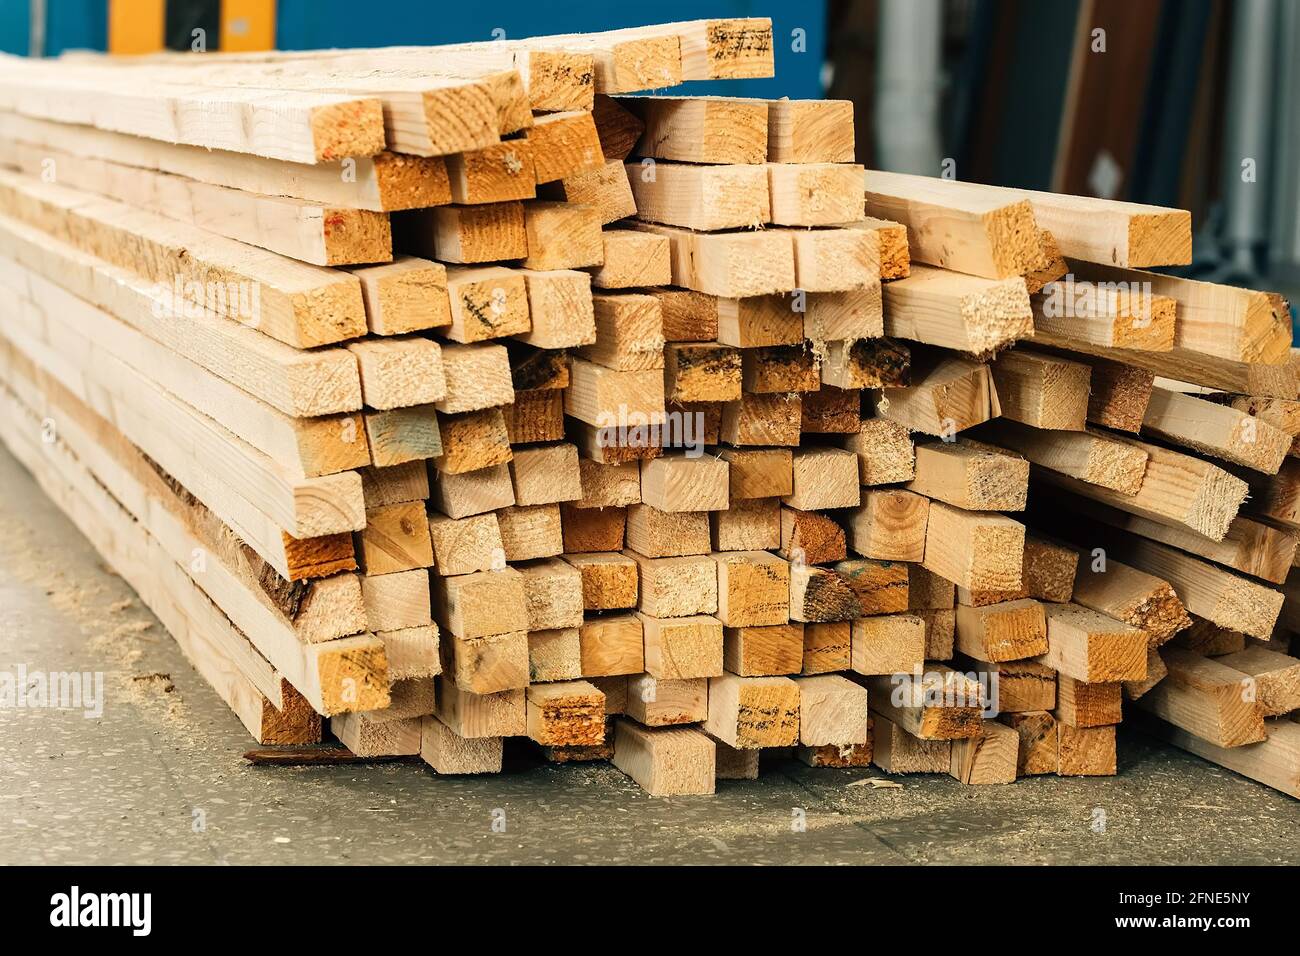 Holzbalken liegen auf dem Boden in einer Tischlerei oder einem Sägewerk. Hintergrund für einen Hersteller von Baustoffen aus Holz. Stockfoto